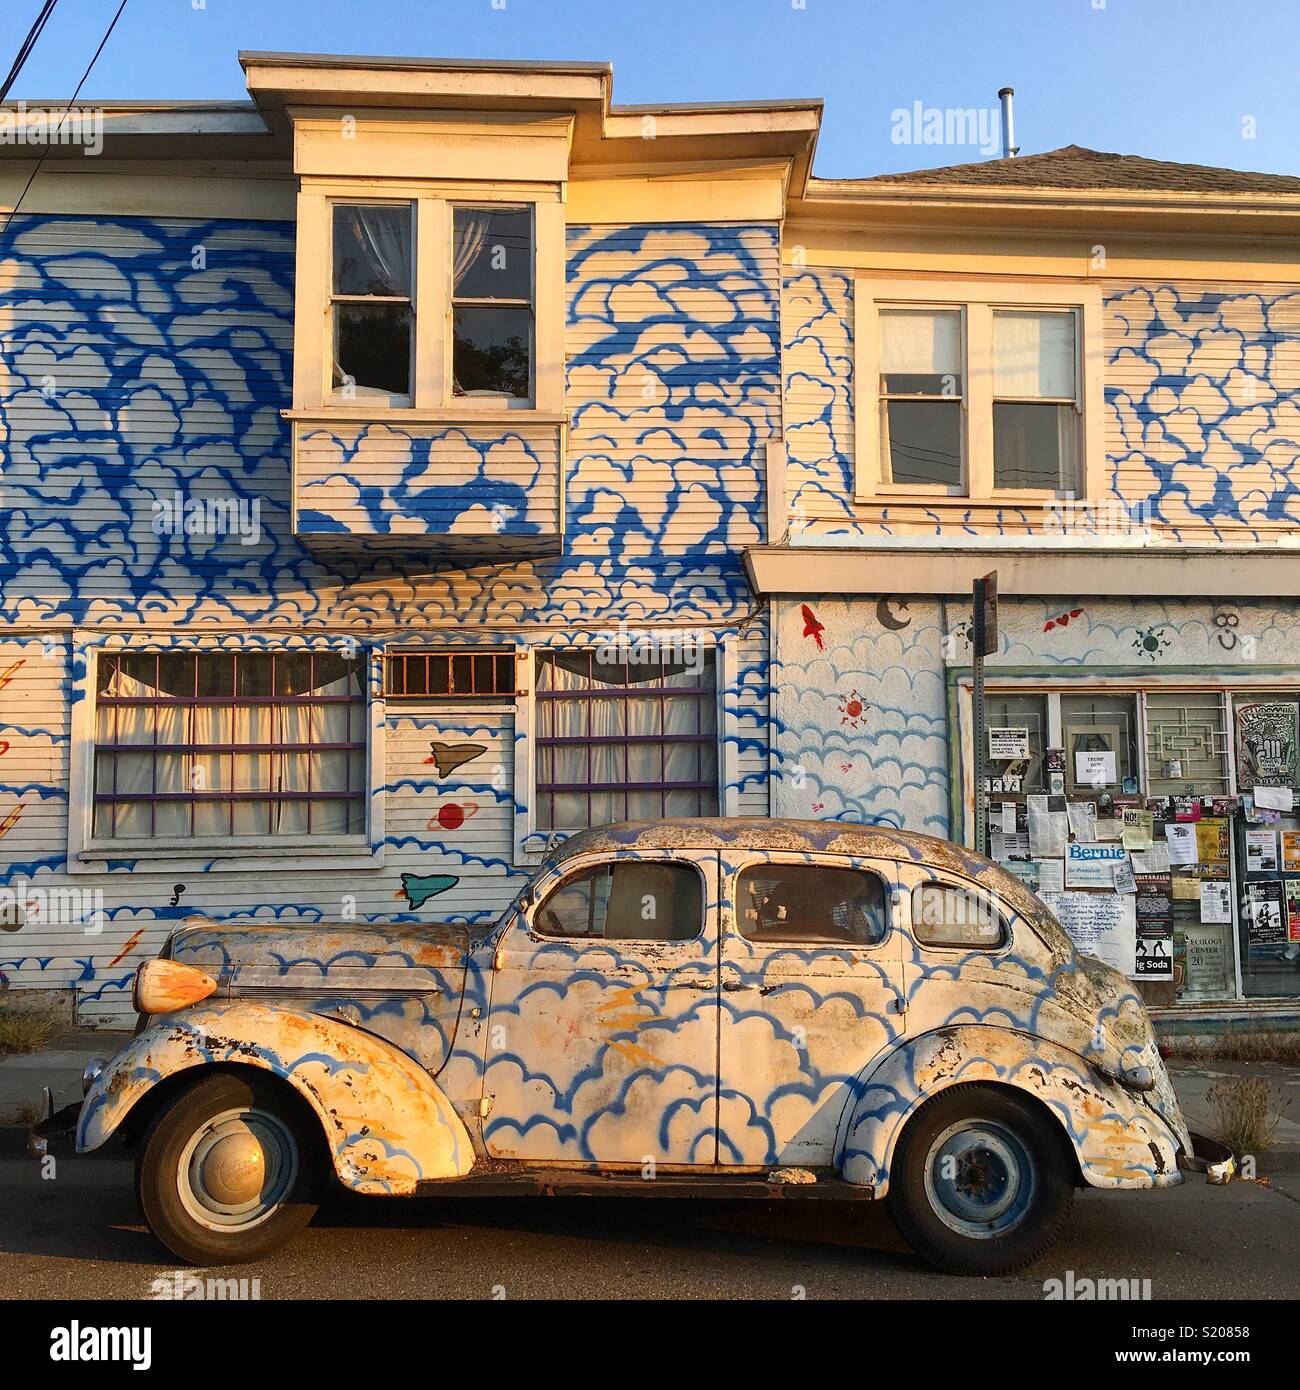 Une voiture garée devant une maison d'une peinture assortie Banque D'Images